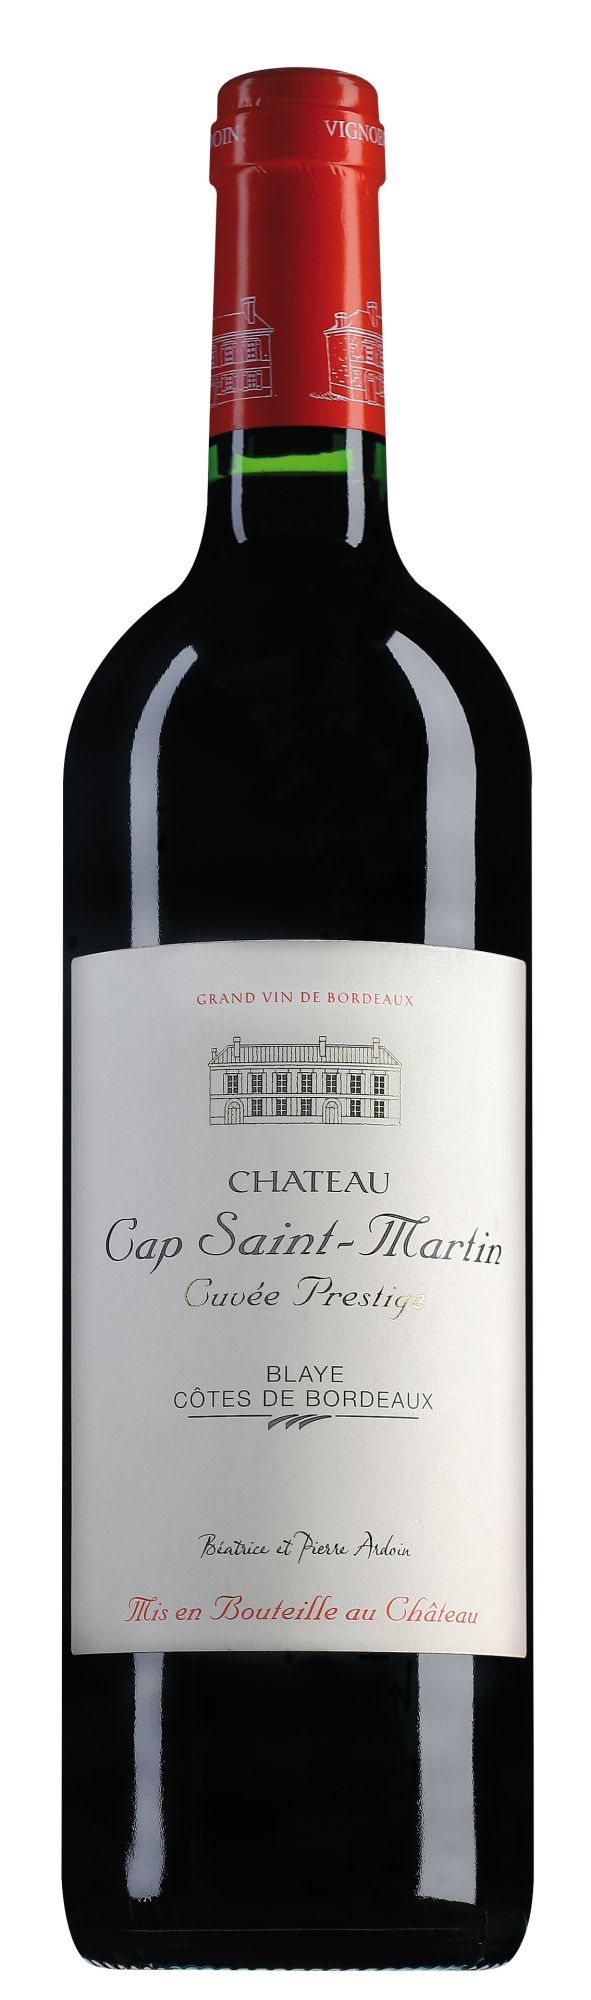 Château Cap Saint-Martin Blaye Côtes de Bordeaux Cuvée Prestige